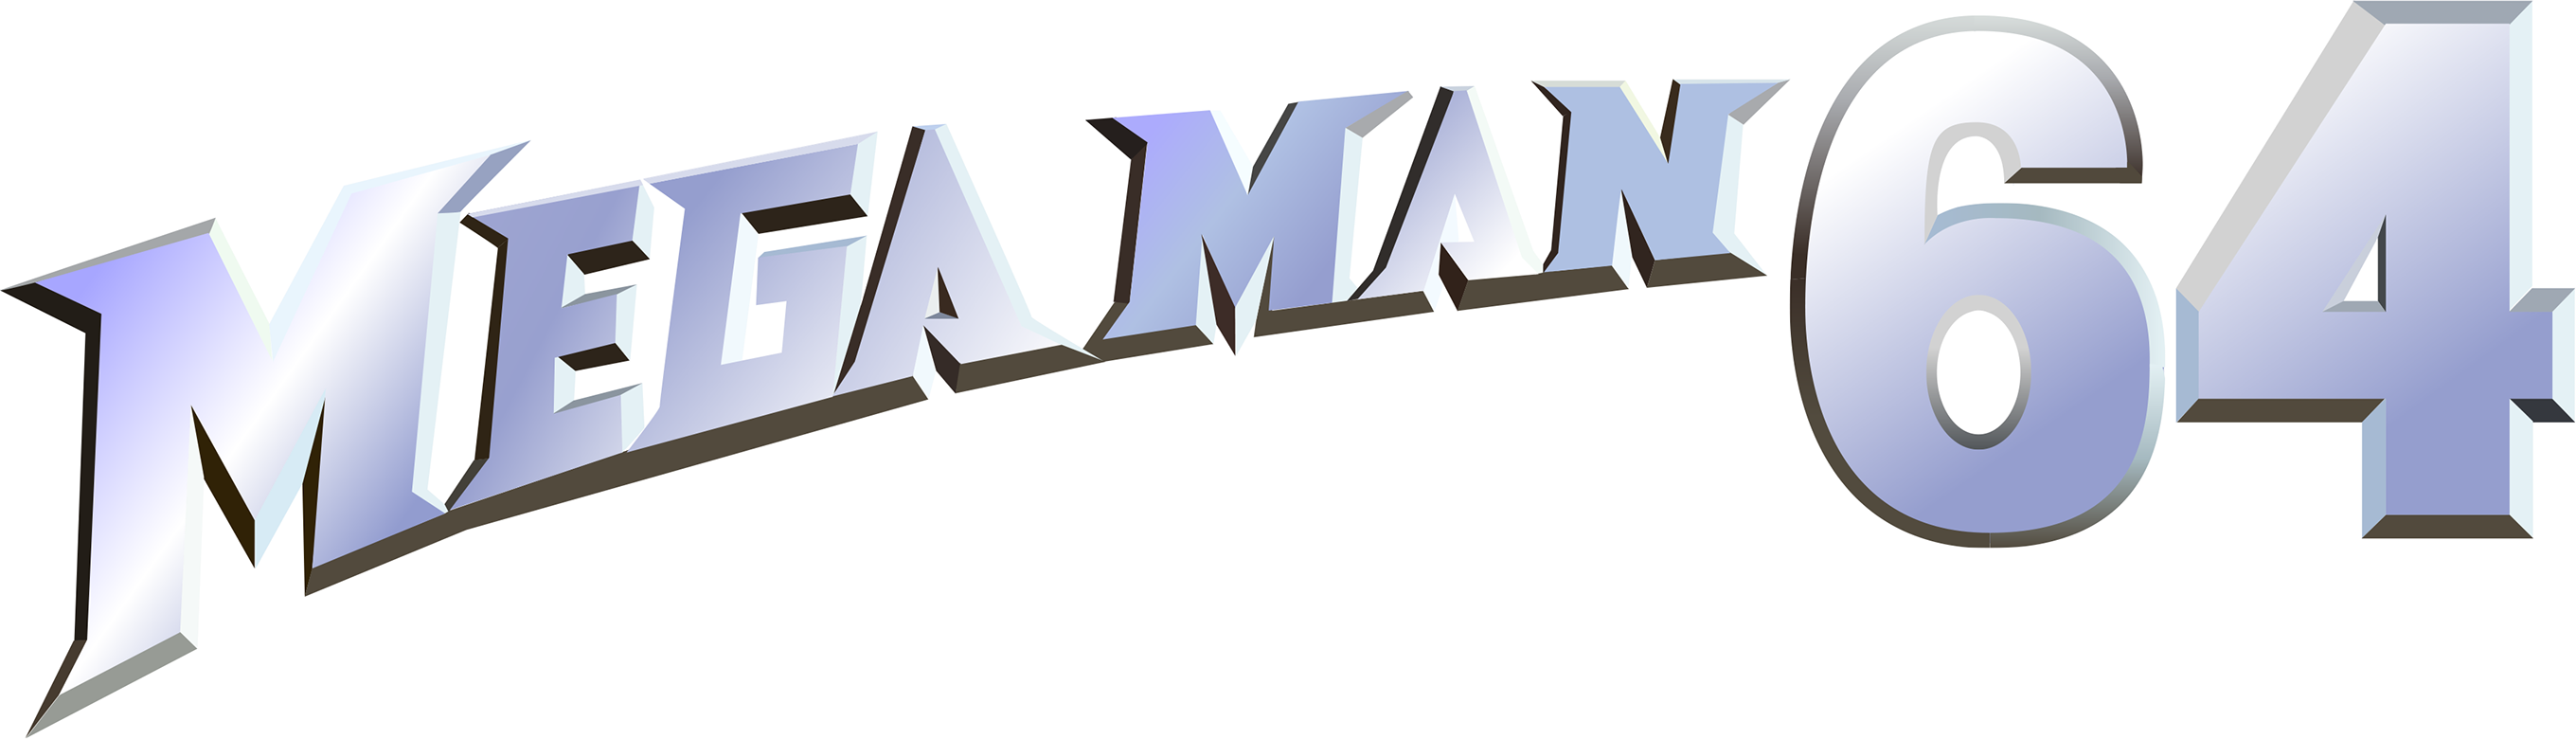 Mega Man Logo PNG Isolated Image